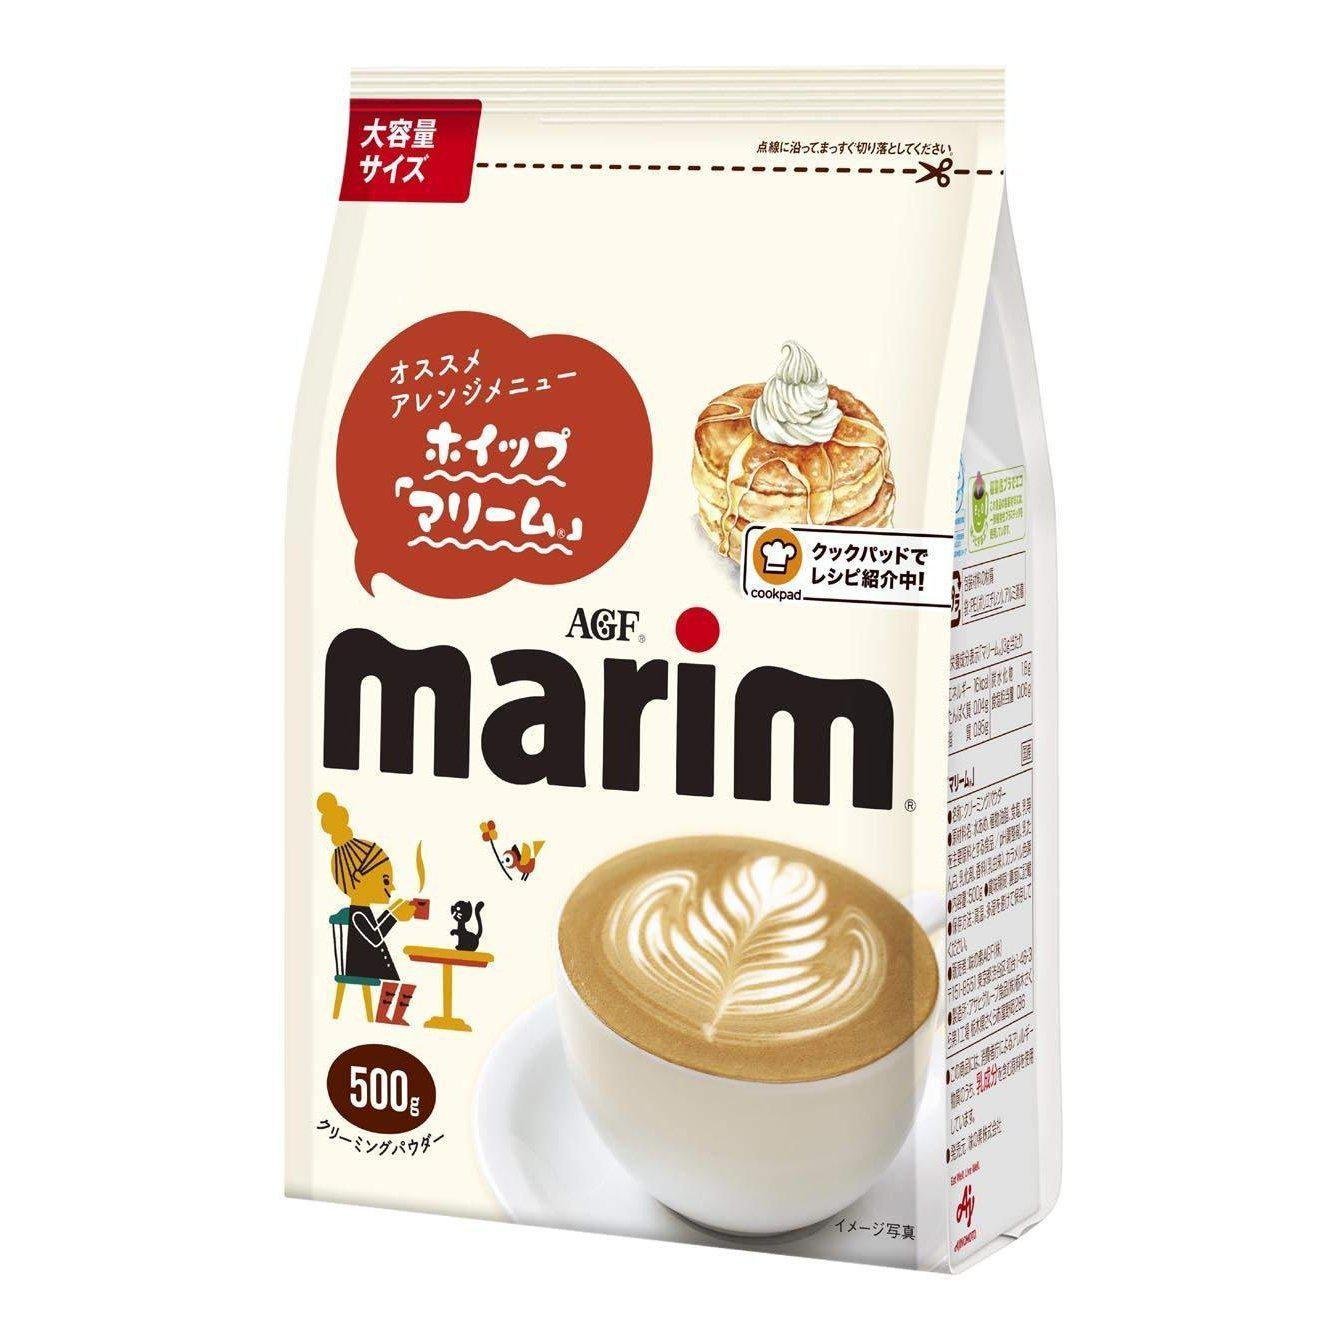 P-1-AGF-MAR-CP-500-AGF Marim Creaming Powder for Coffee Milk 500g.jpg